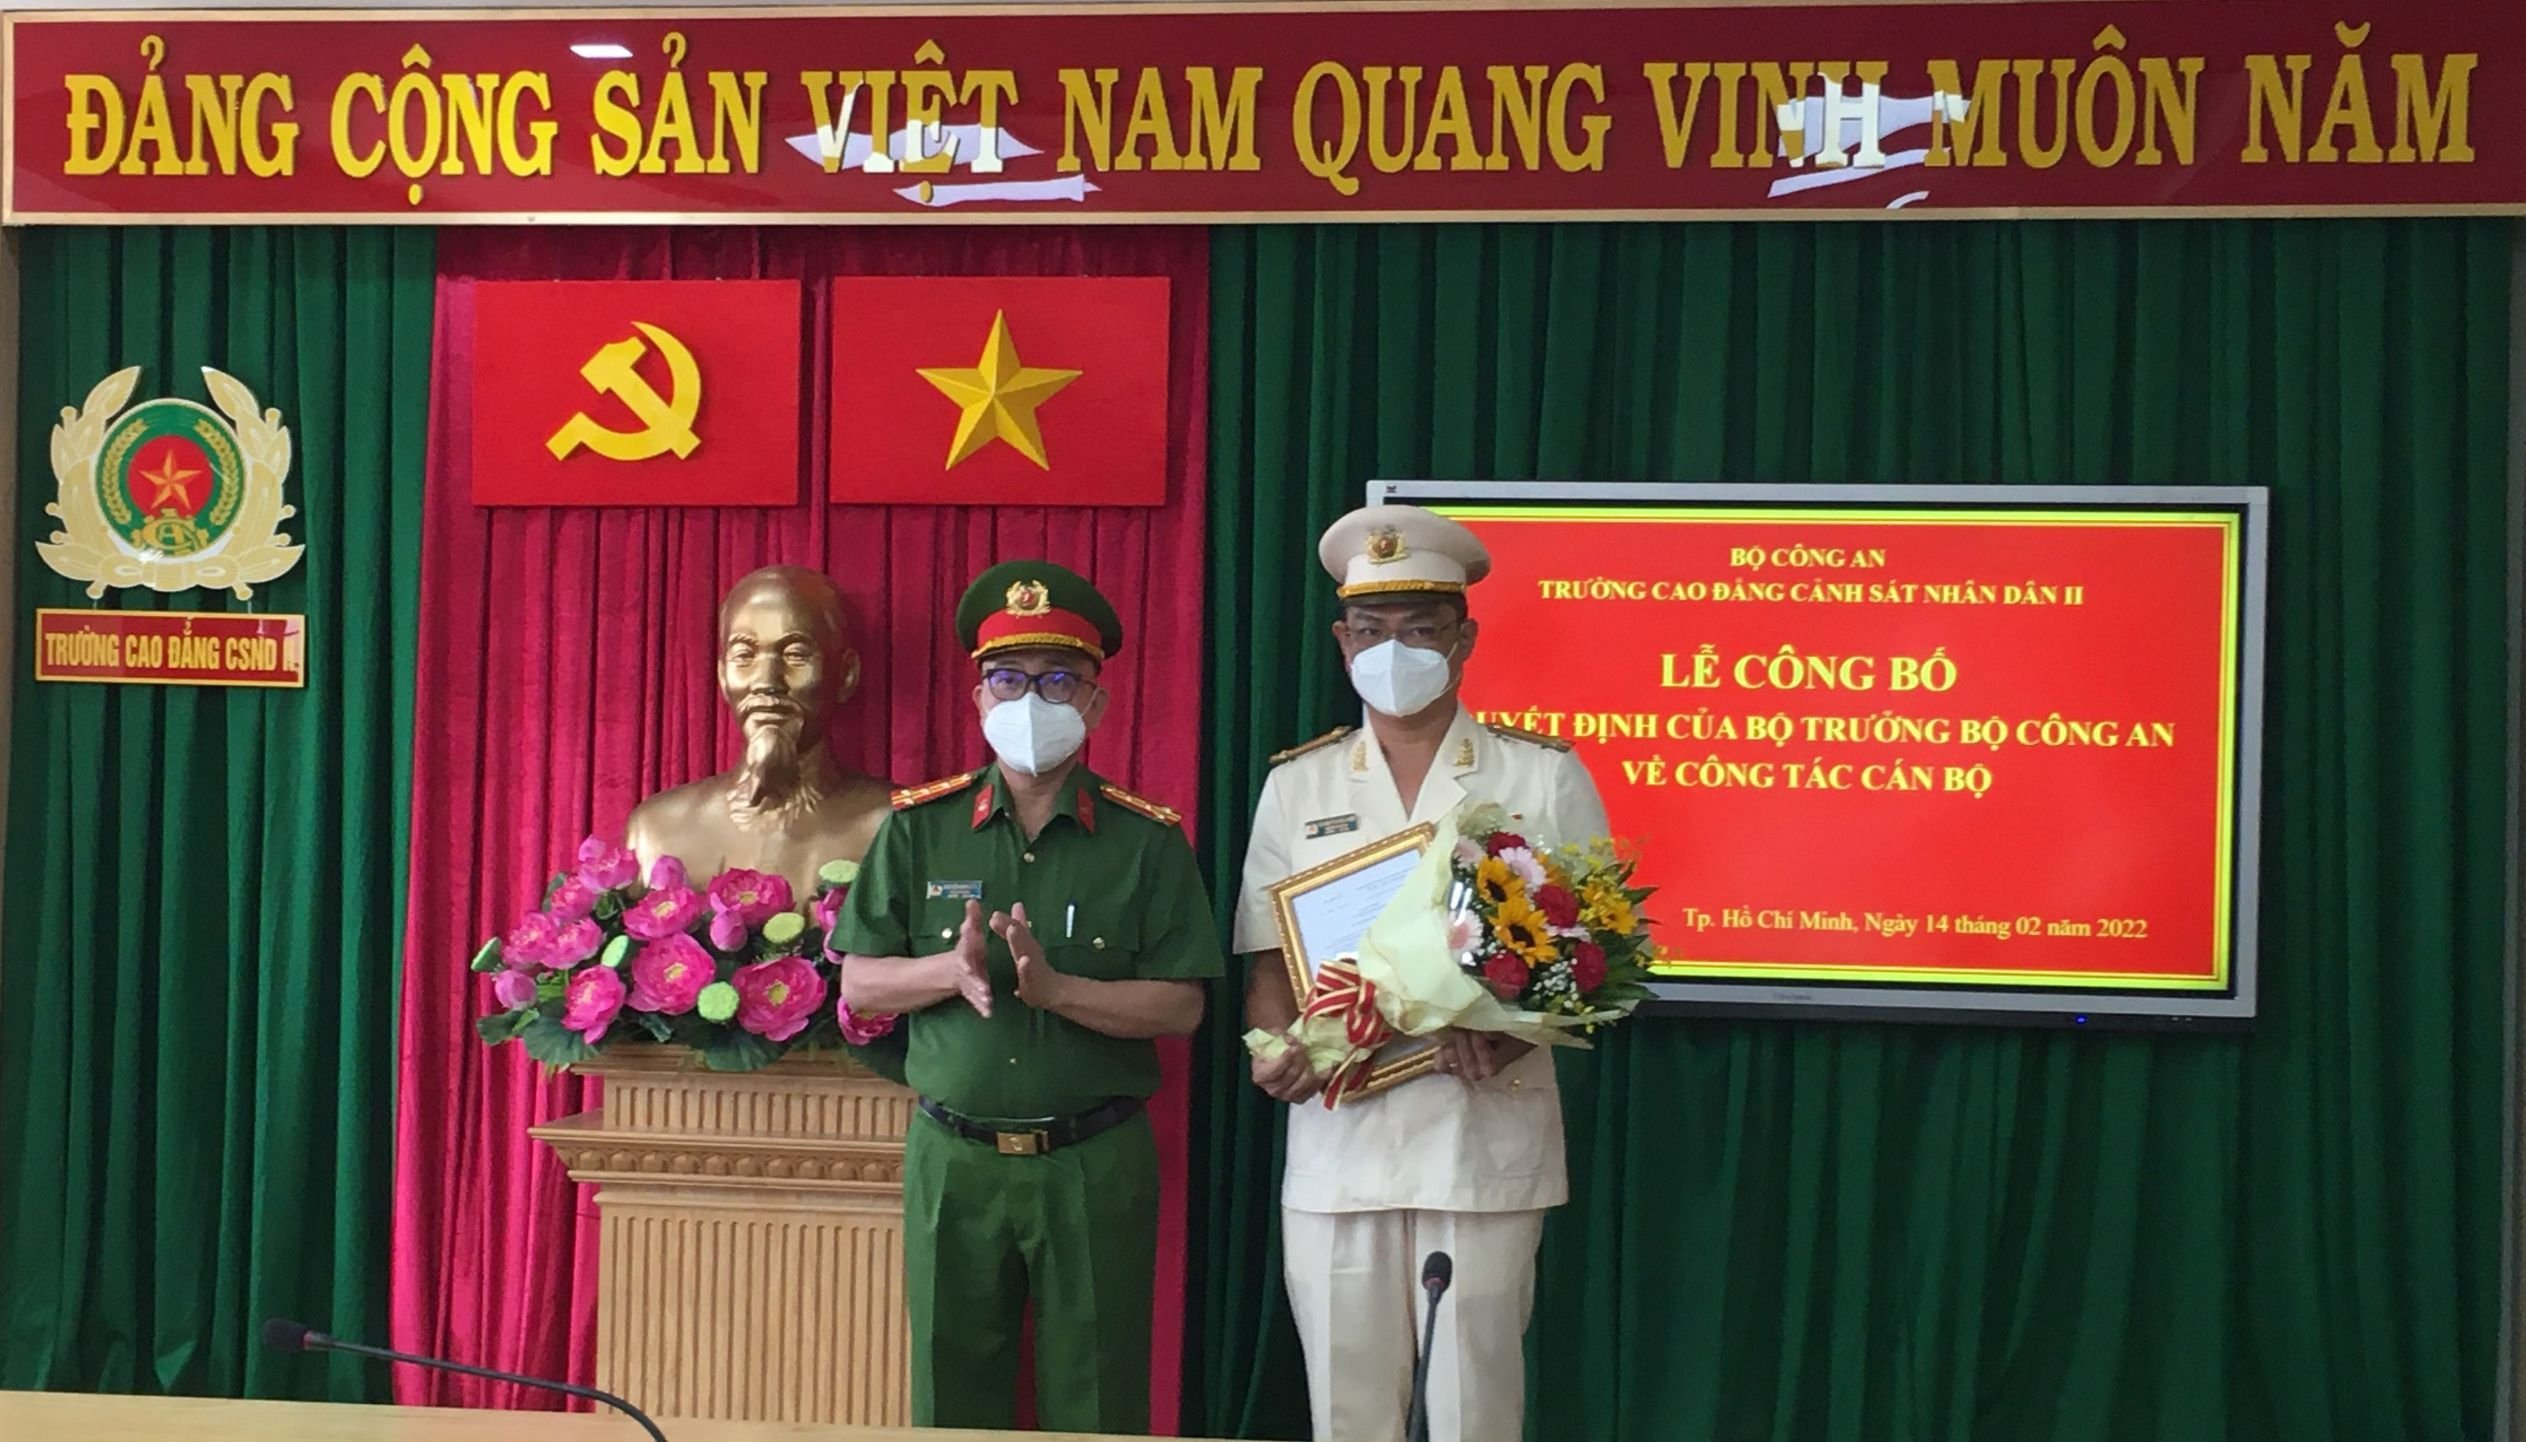 Trung tá Nguyễn Quốc Việt giữ chức Phó hiệu trưởng Trường Cao đẳng CSND II